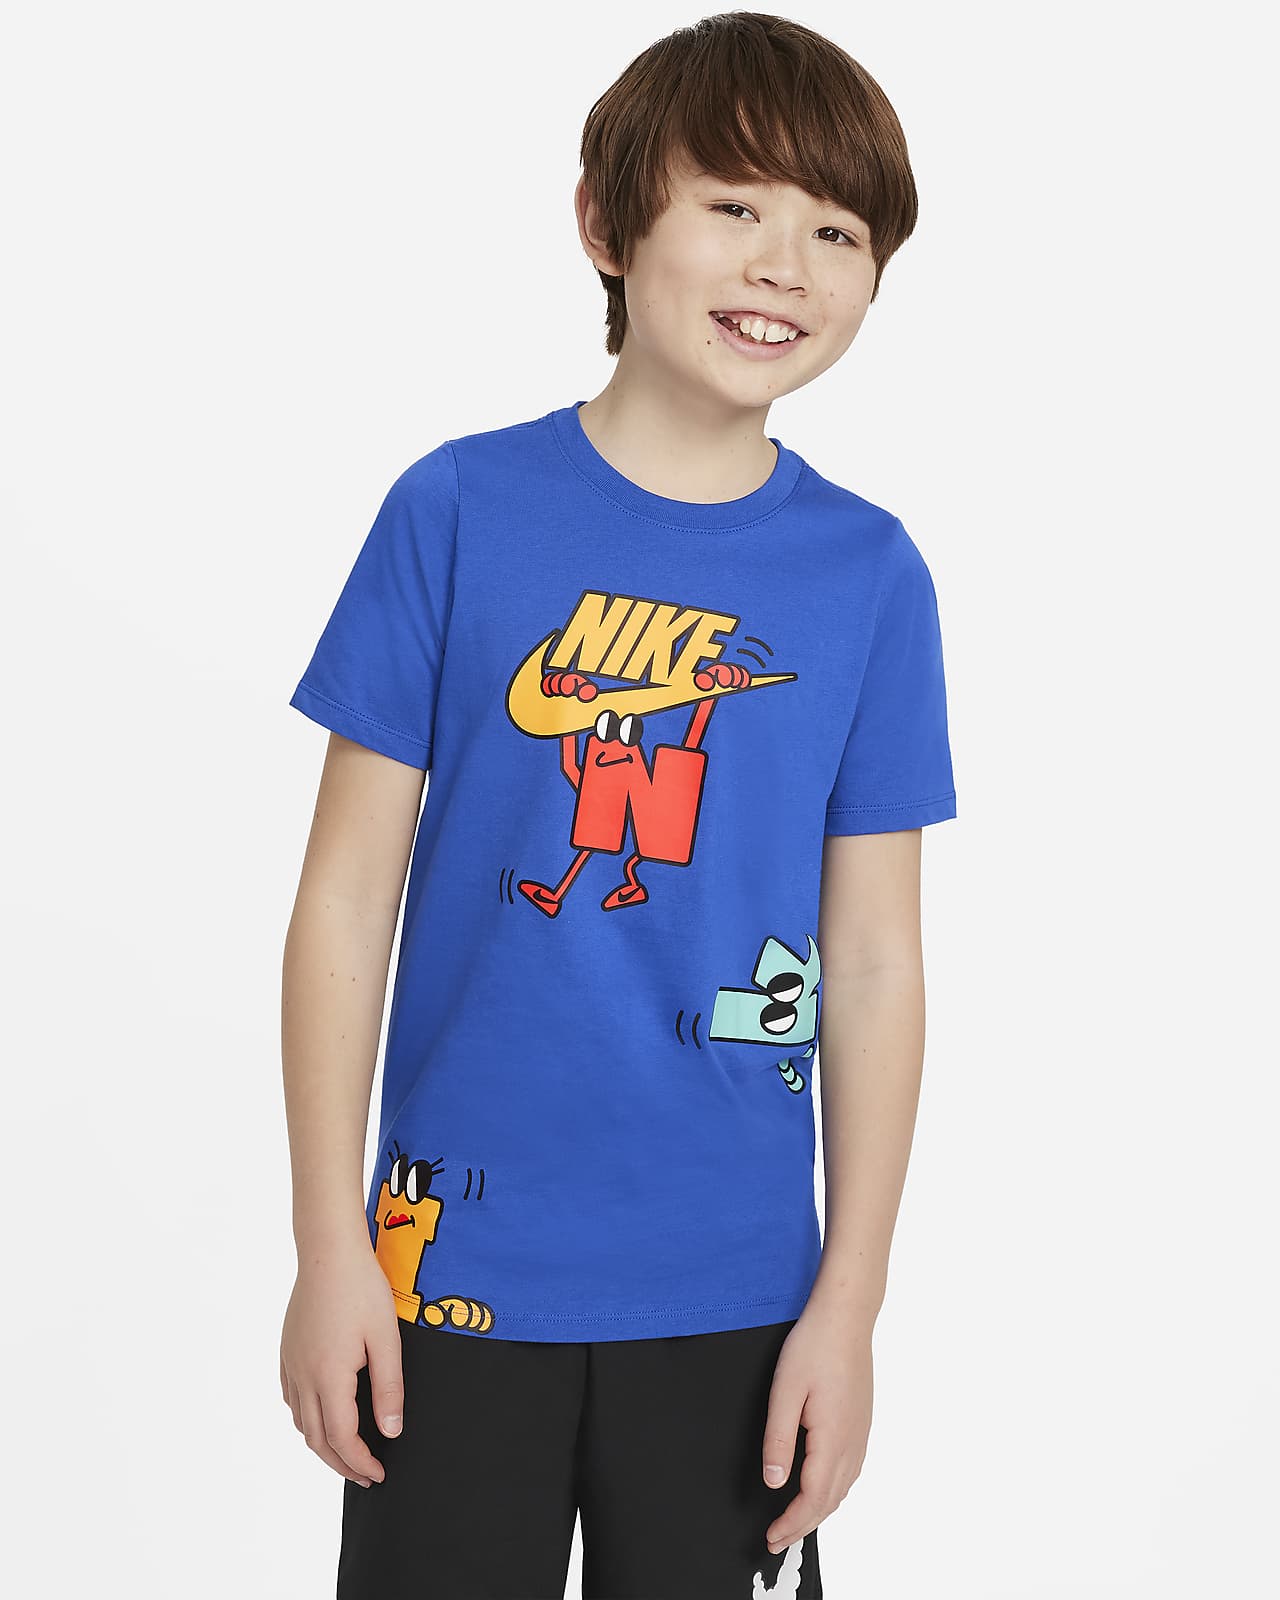 Nike公式 ナイキ スポーツウェア ジュニア Tシャツ オンラインストア 通販サイト